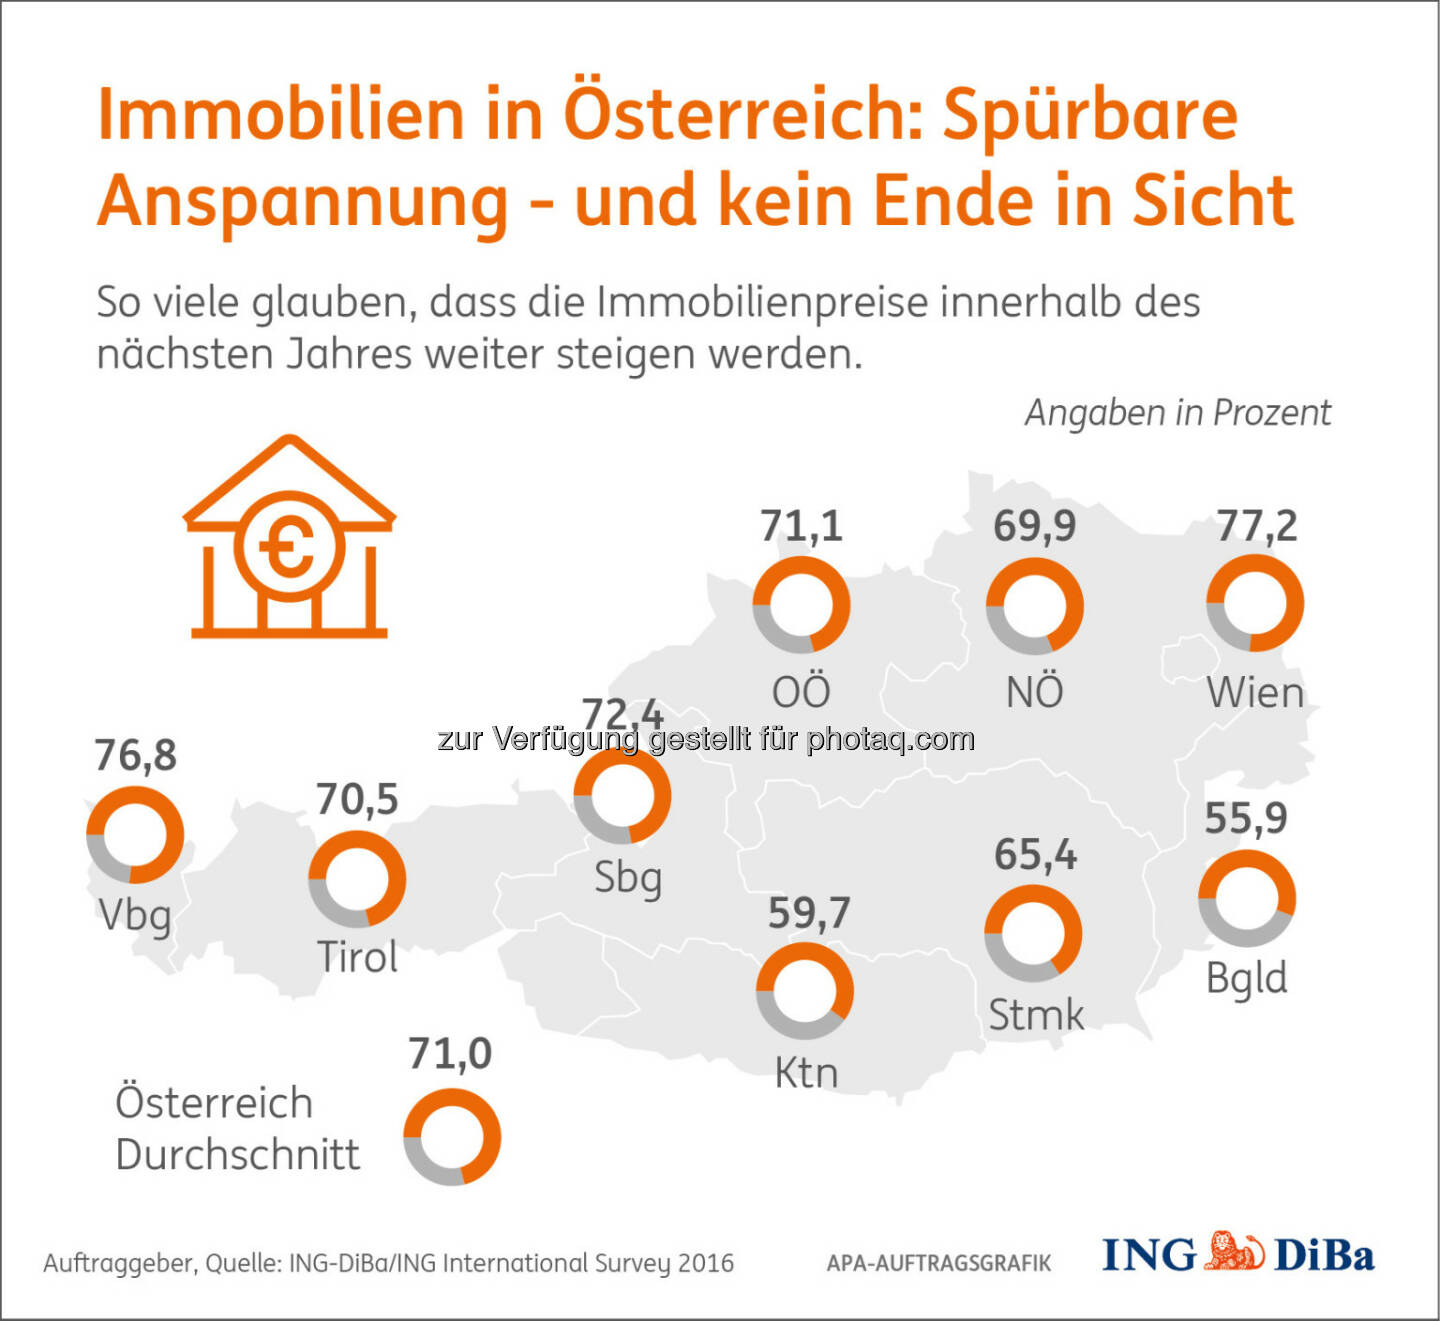 Grafik „Immobilienpreise in Österreich“ : Umfrage im Auftrag der ING-DiBa : Wiener und Vorarlberger spüren angespannte Lage am stärksten : Fotocredit: ING-DiBa/ING International Survey/APA-Auftragsgrafik